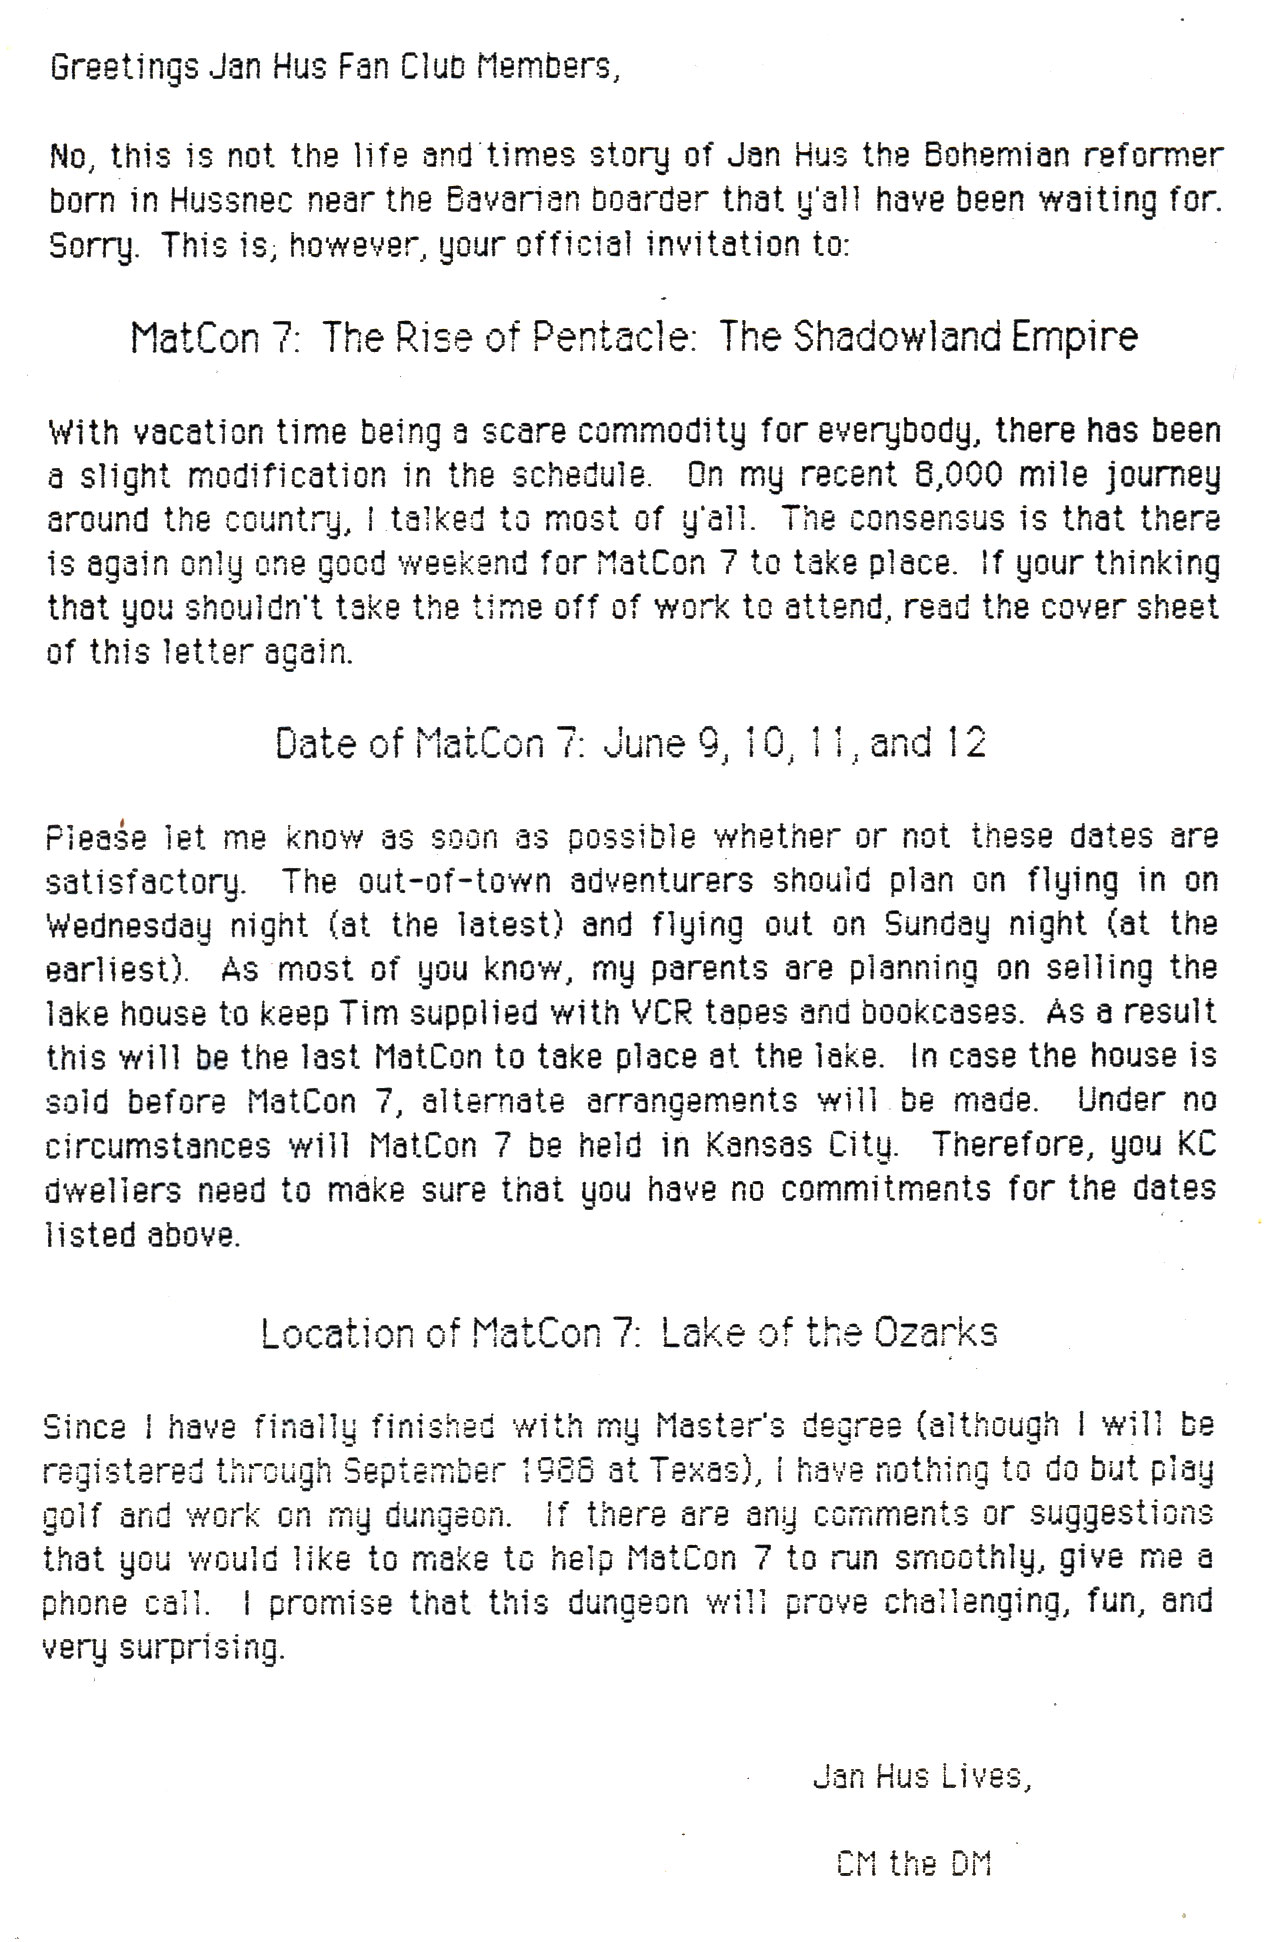 Matcon 7 invite 2.jpg